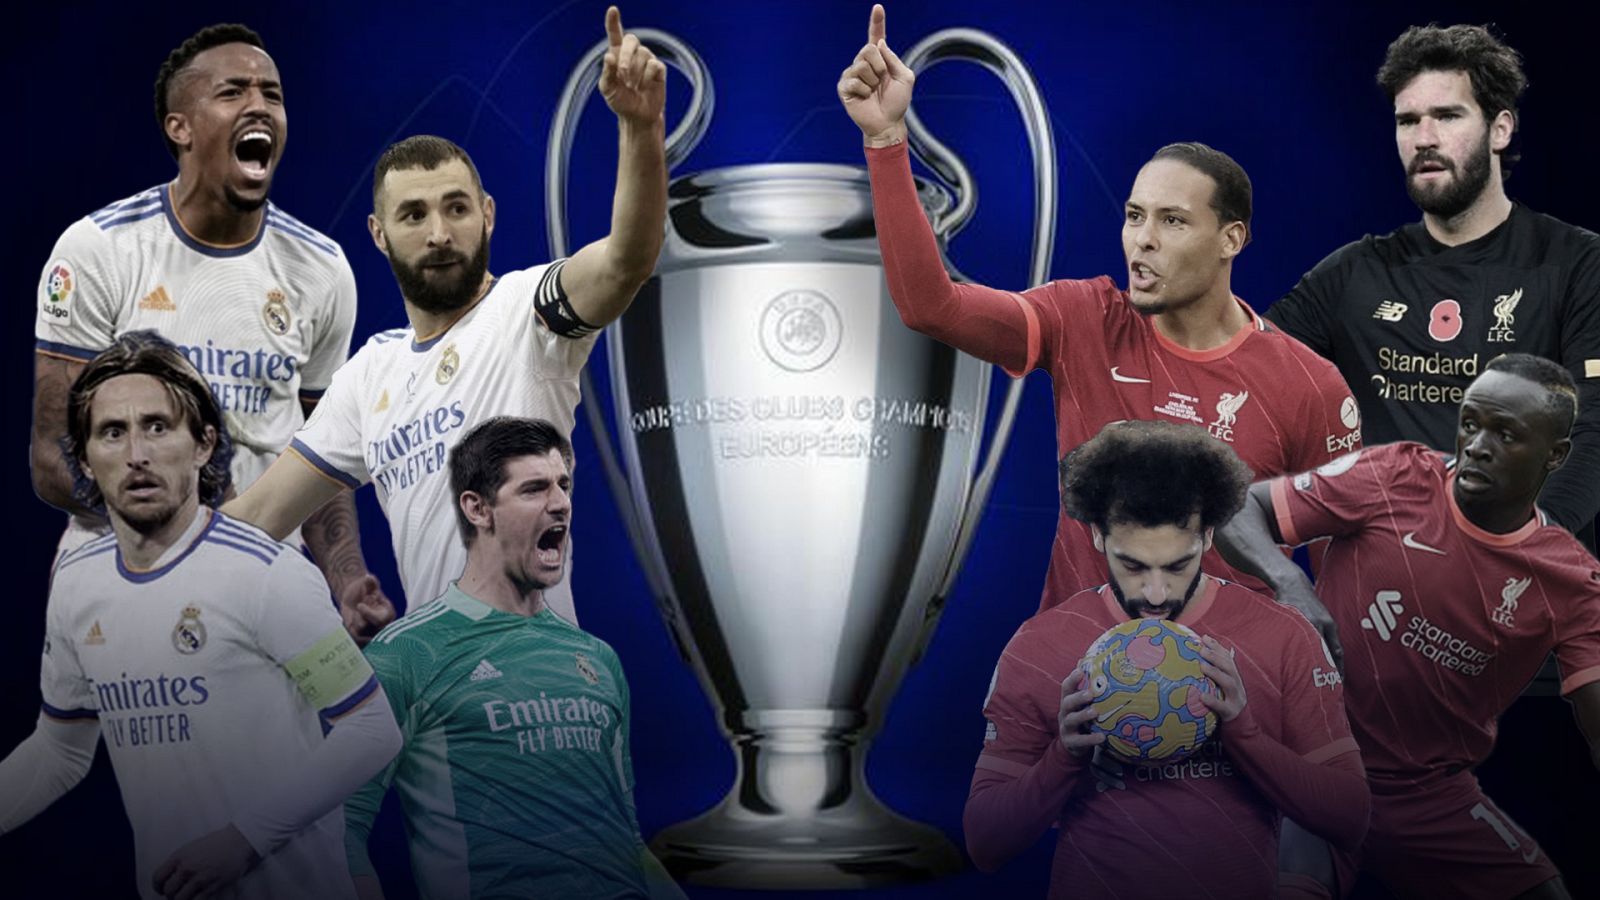 ¿Quién llega mejor a la final de la Champions League